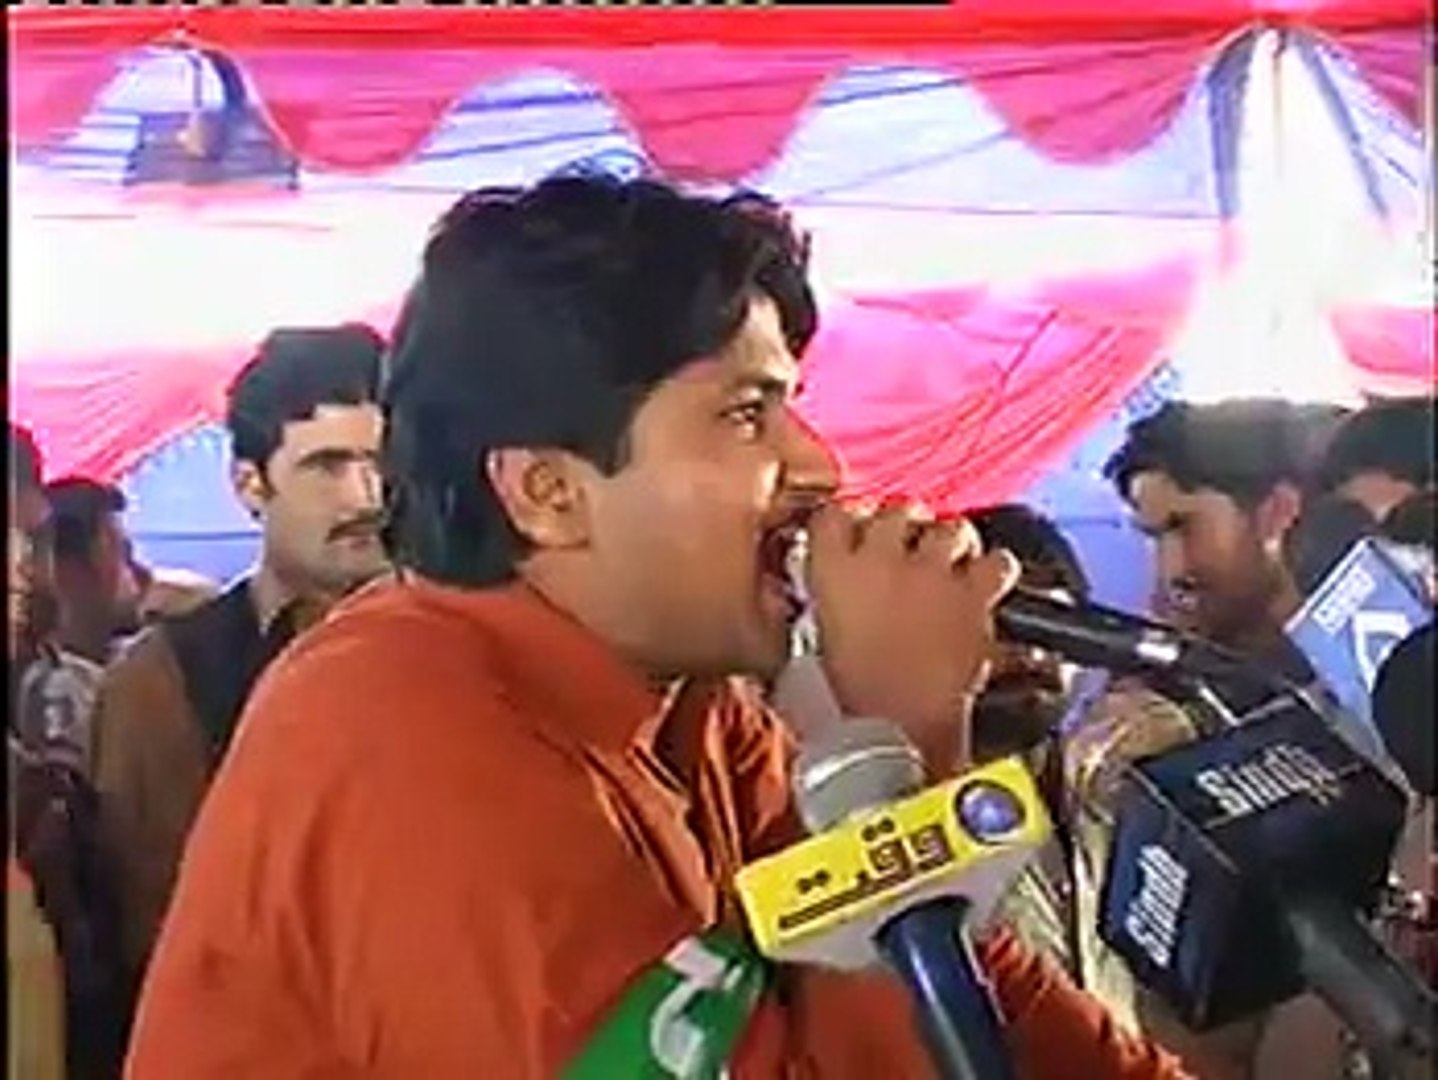 arif rind pti youth activist Balochistan